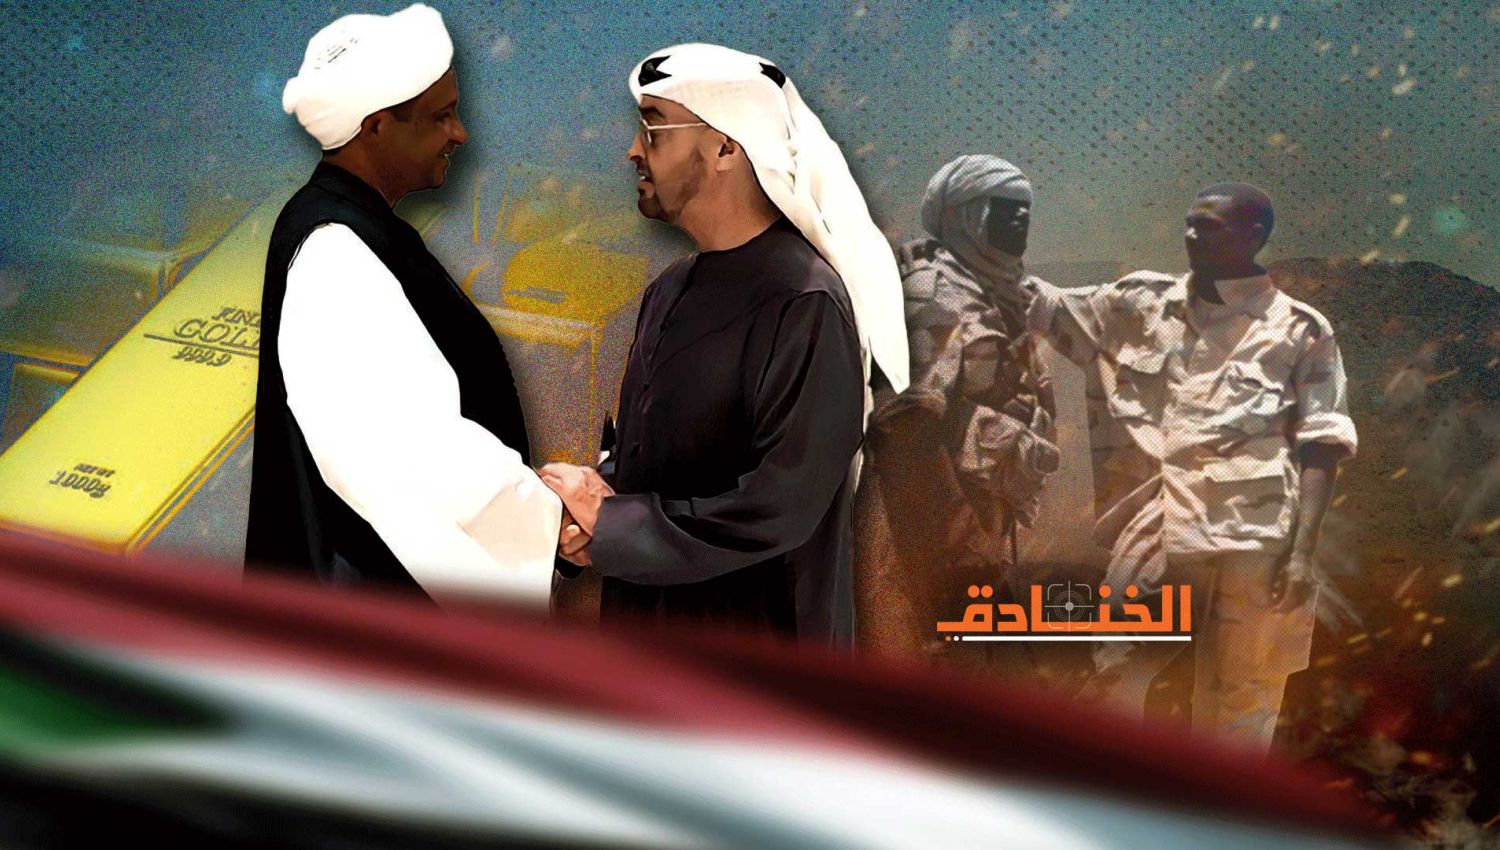 ذهب وسلاح ومرتزقة: شبكات الإمارات الغامضة في السودان